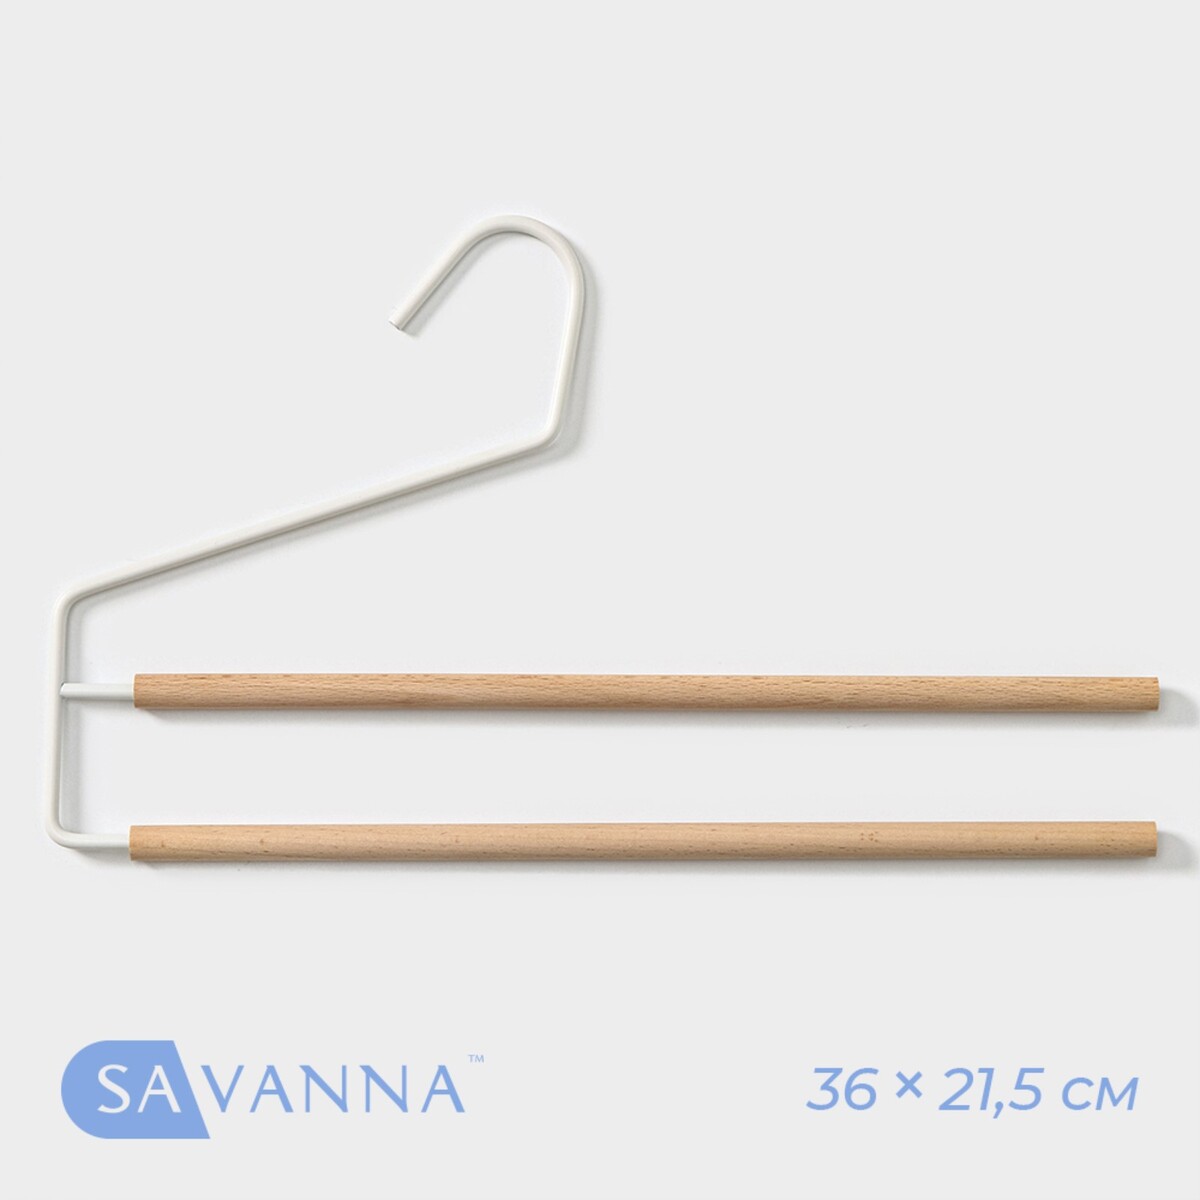 Плечики - вешалки многогуровневые для брюк и юбок savanna wood, 36×21,5×1,1 см, цвет белый термос серия wood